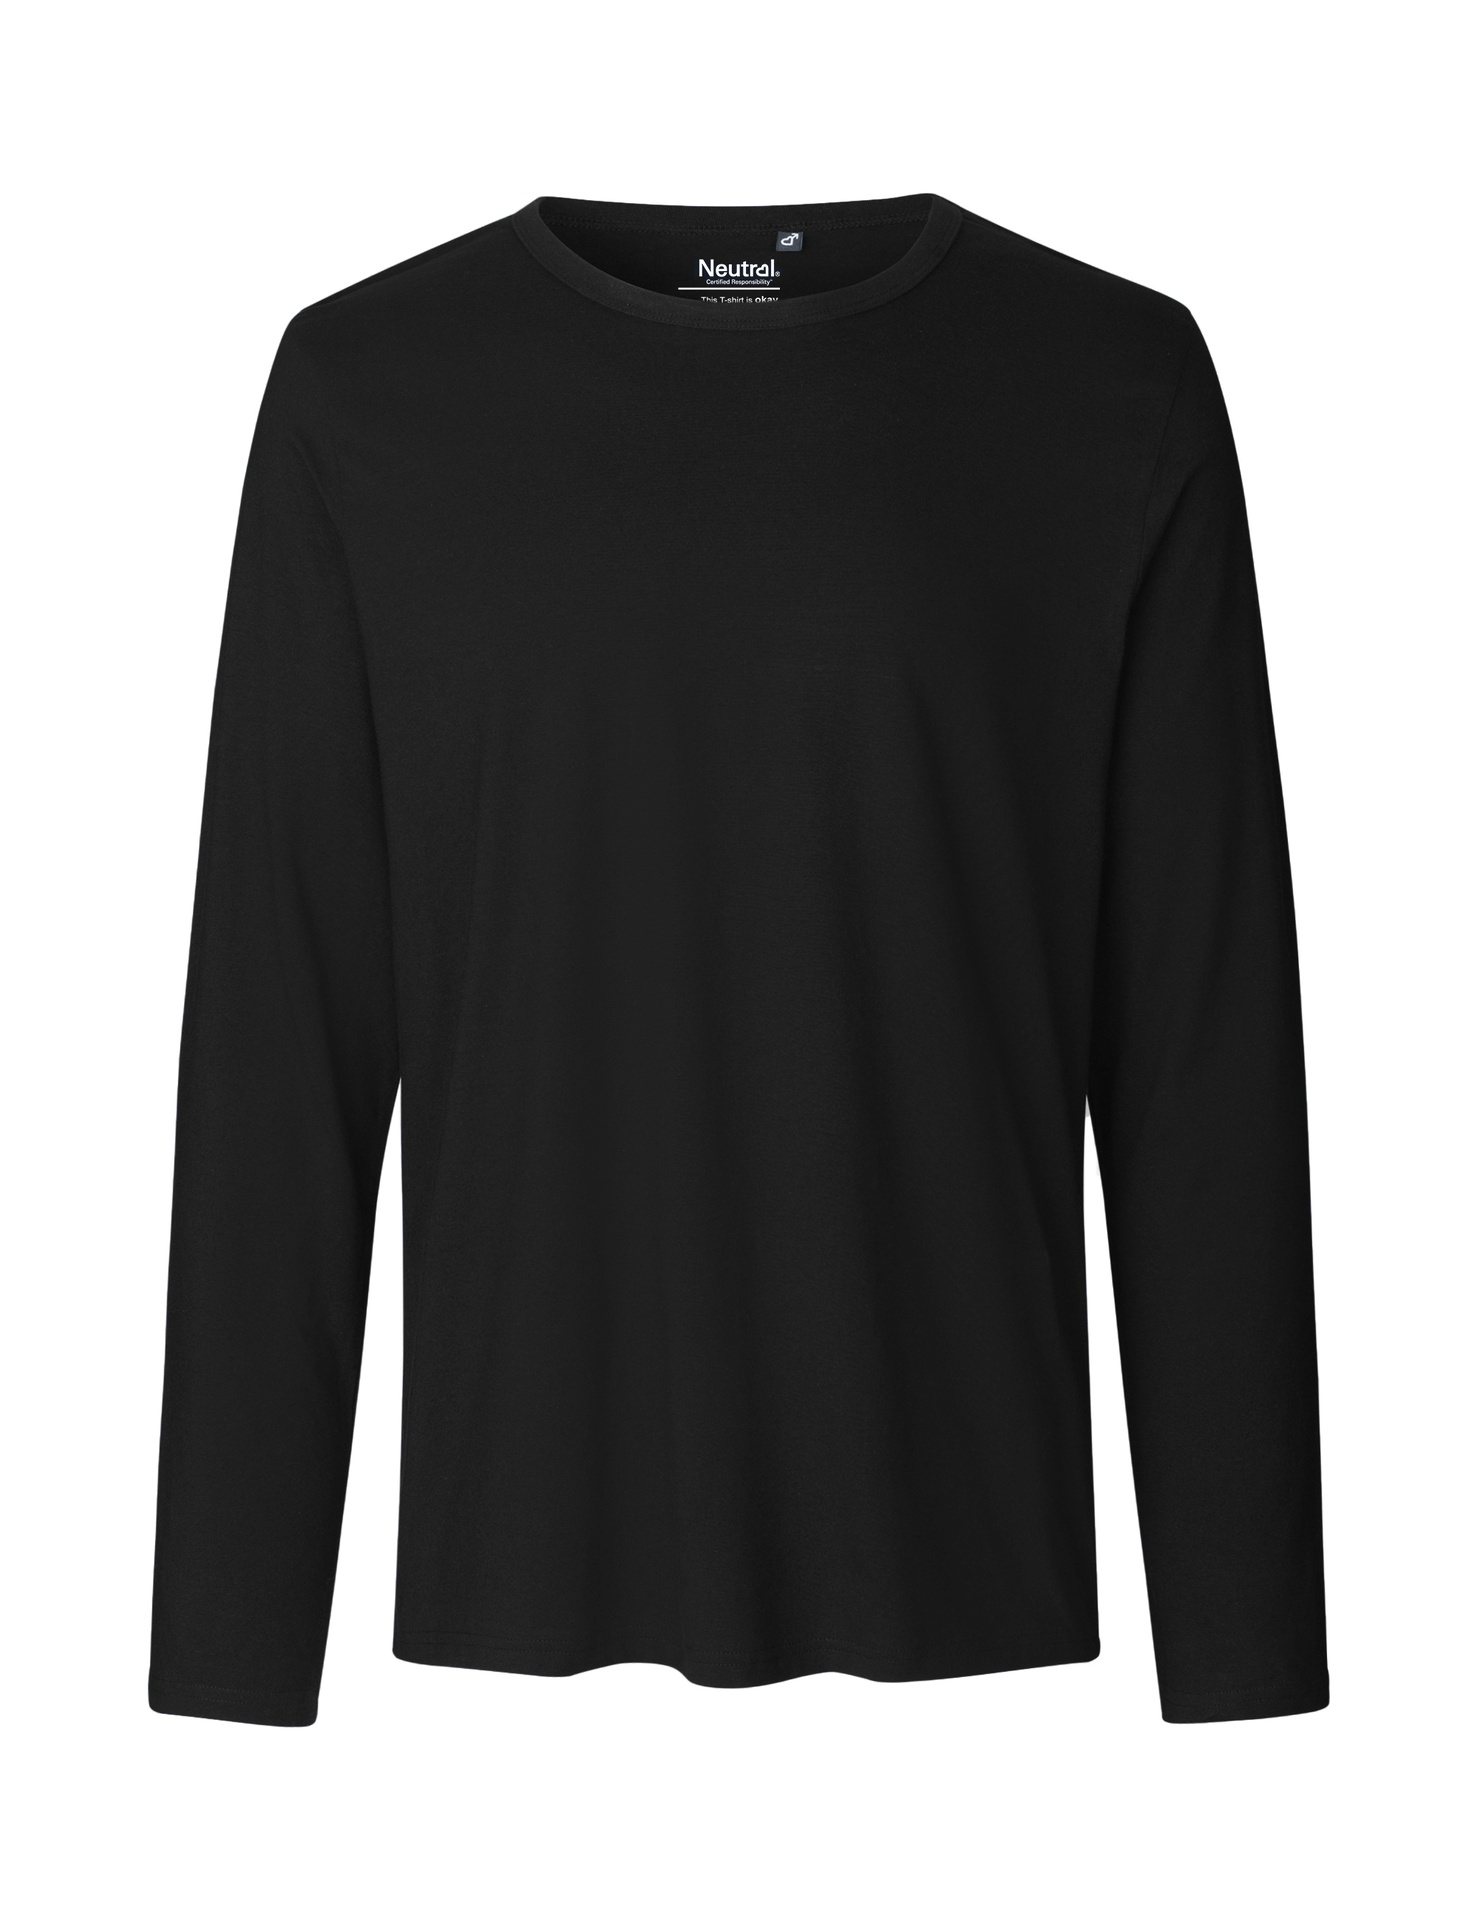 [PR/02349] Mens Long Sleeve T-Shirt (Black 03, 3XL)